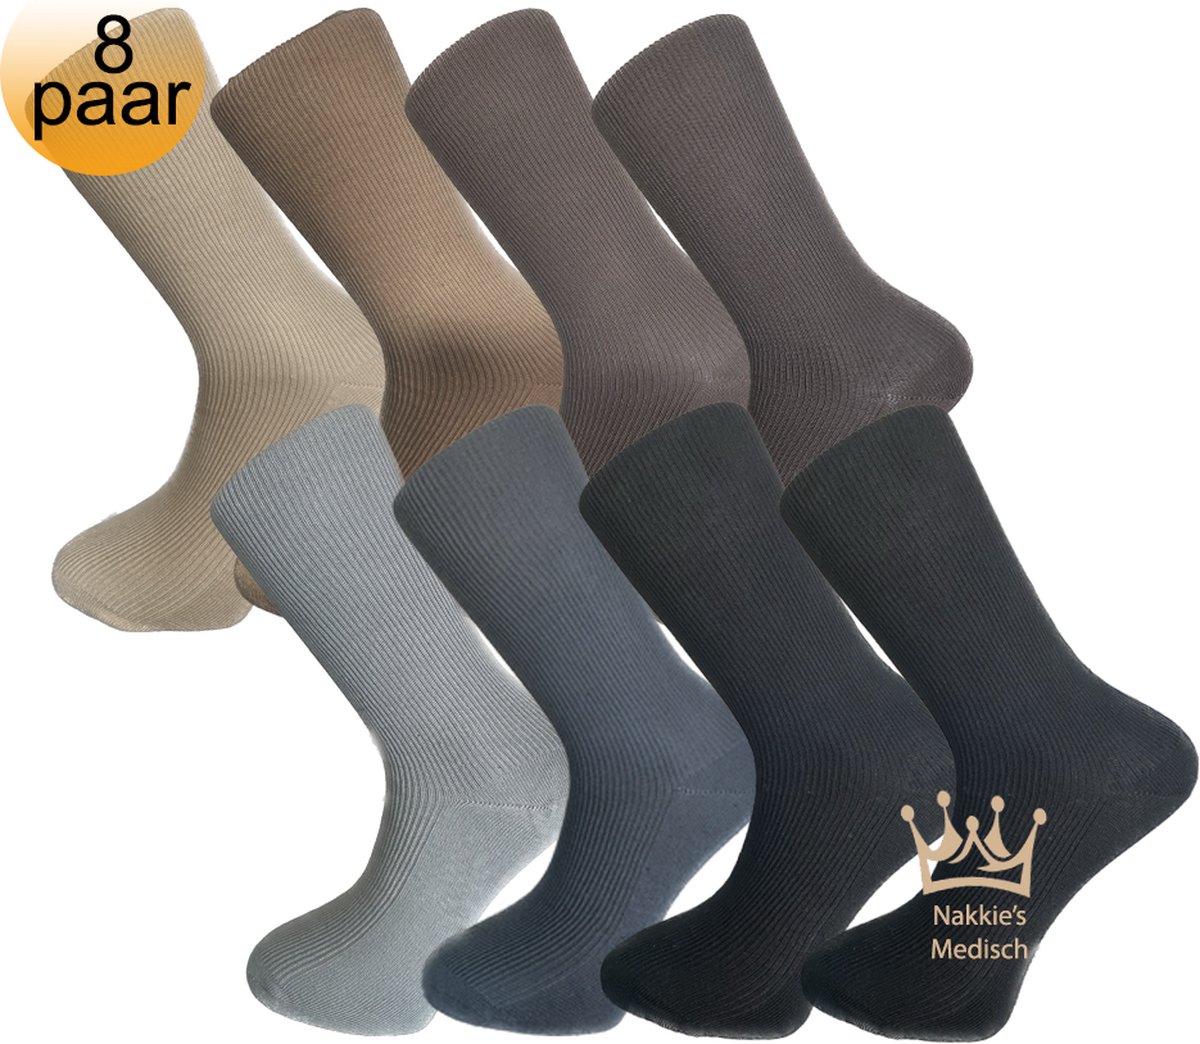 Medische sokken - 100% katoen - 8 paar - Maat 39/42 - Beige, Bruin, Grijs, Antraciet, Zwart